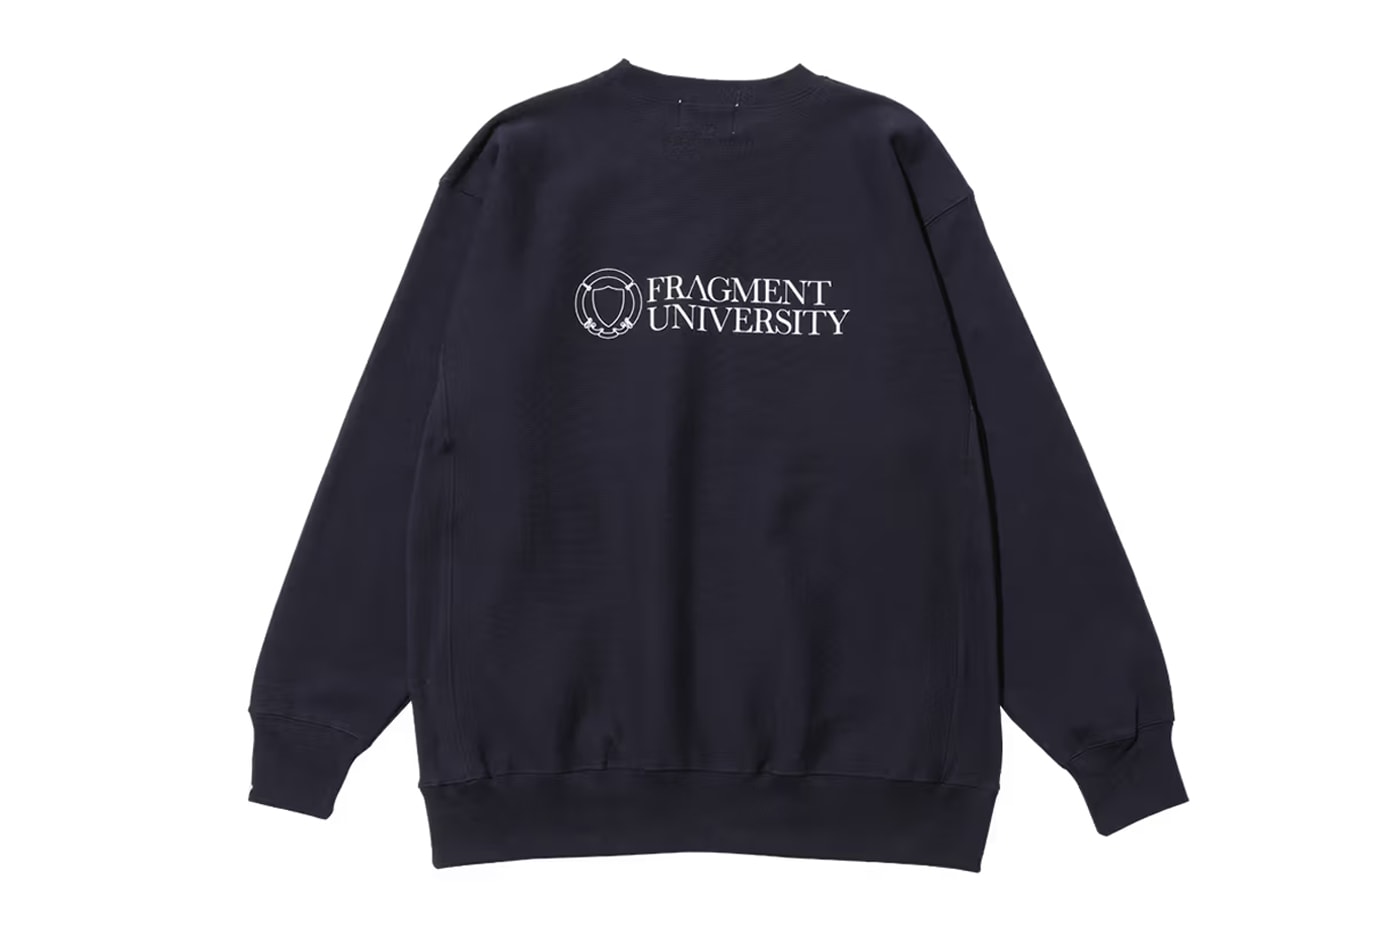 후지와라 히로시의 프라그먼트 대학 공식 머천다이즈 출시, 프라그먼트 디자인, 번개 로고